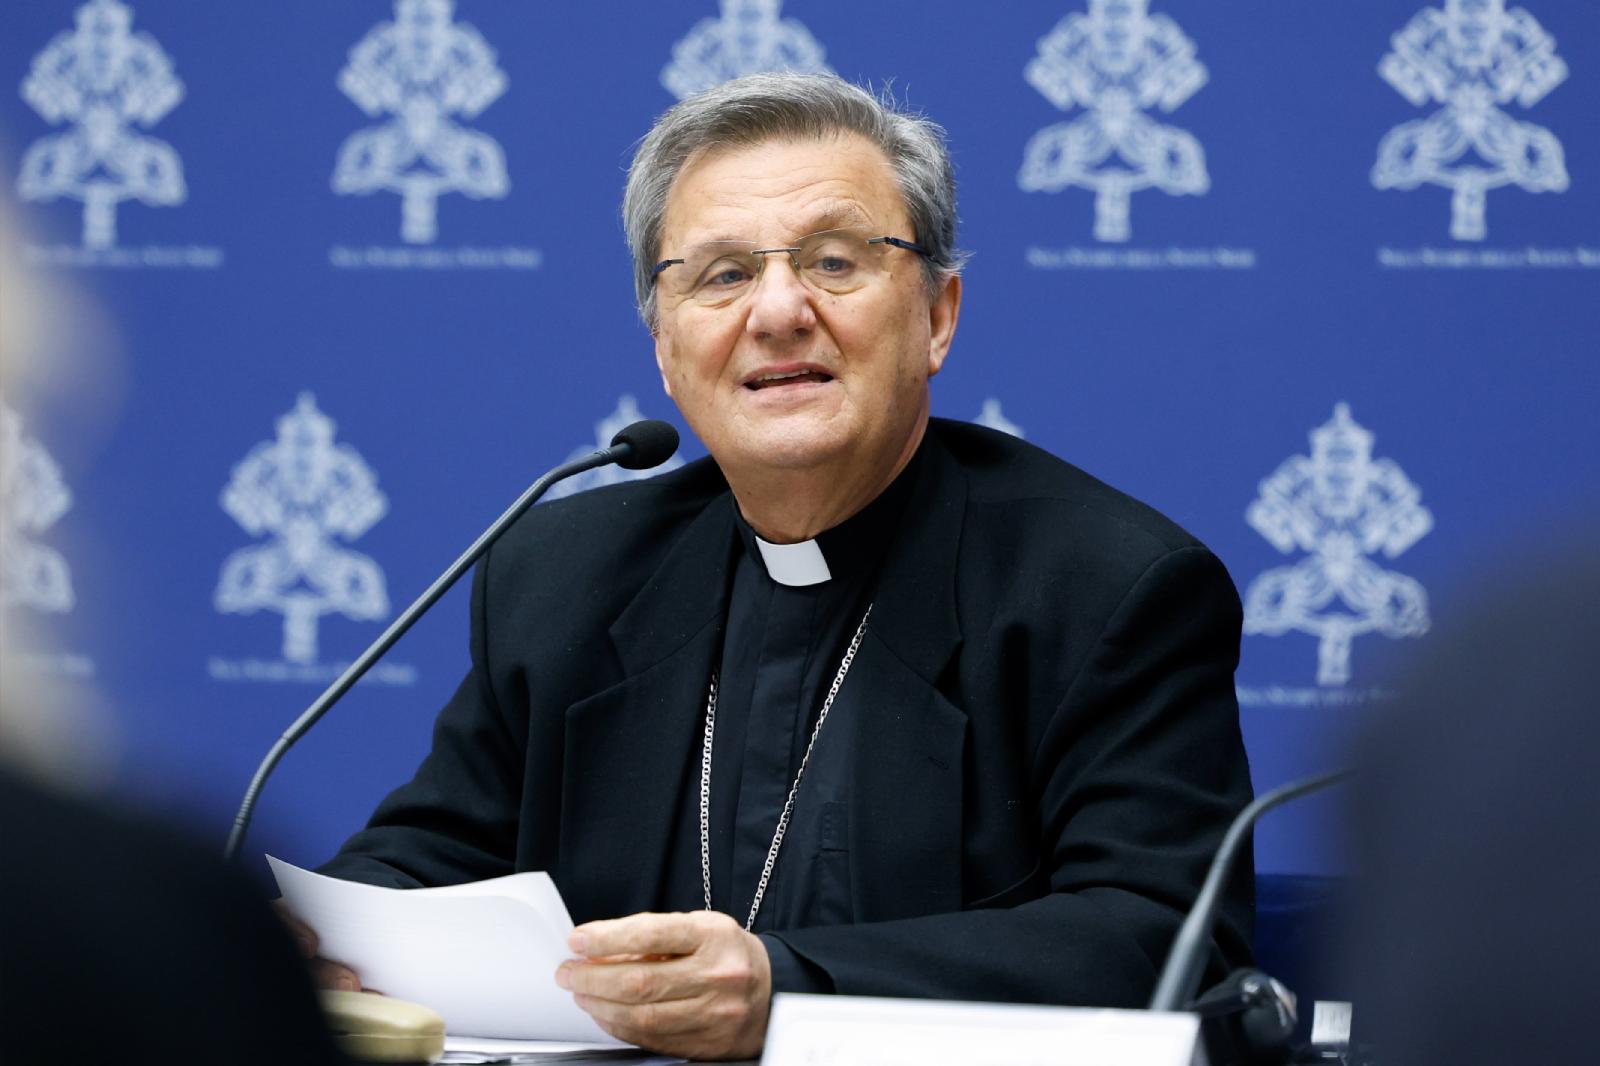 Cardinal Mario Grech